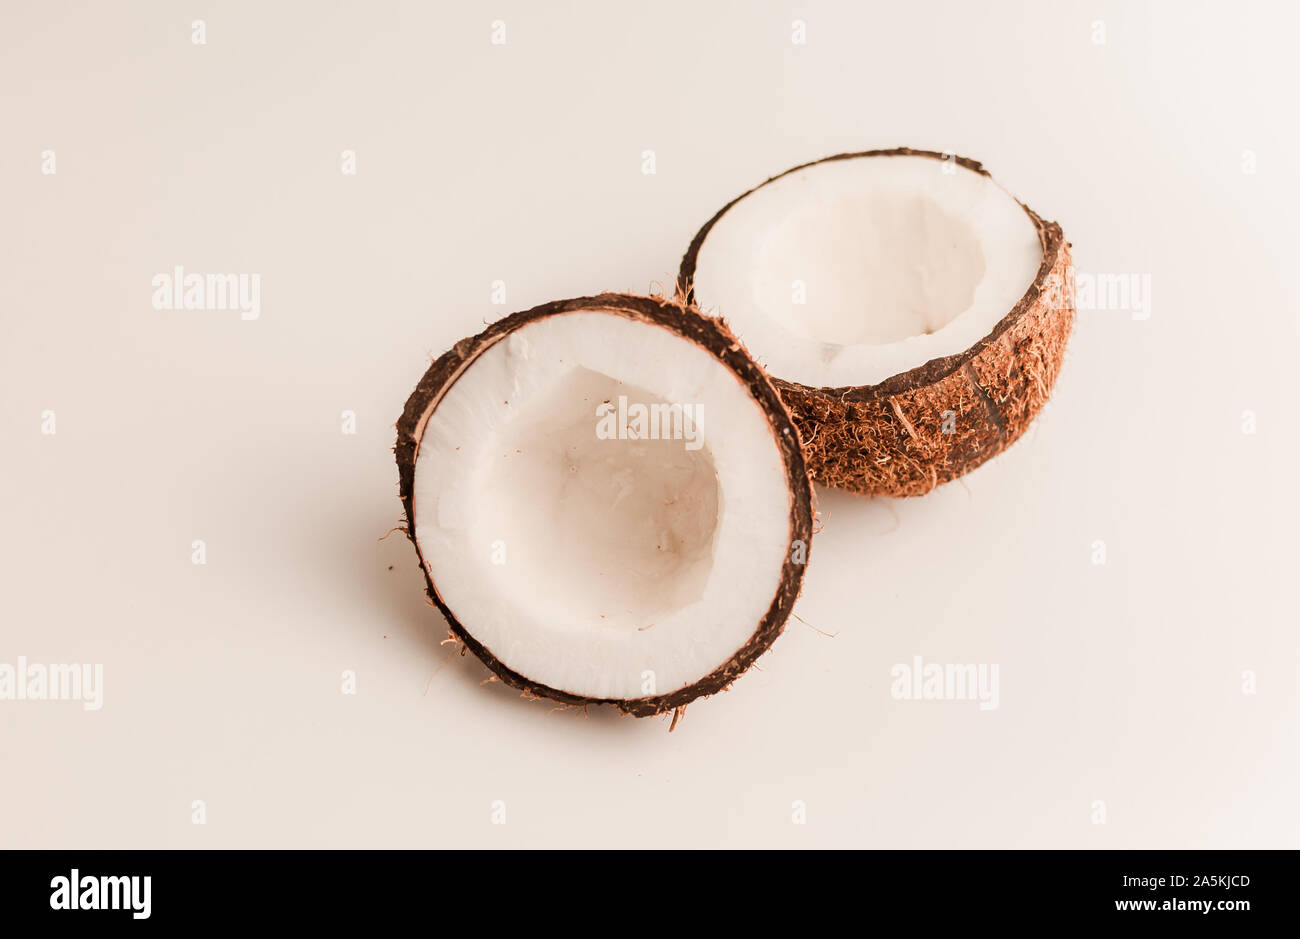 Hässliche organische Kokosnuss auf einem weißen Hintergrund, isolieren. Eine gebrochene Mutter in einer Shell den weißen Innenseiten einer Kokosnuss, begann zu zerfallen und mit abgedeckten Stockfoto